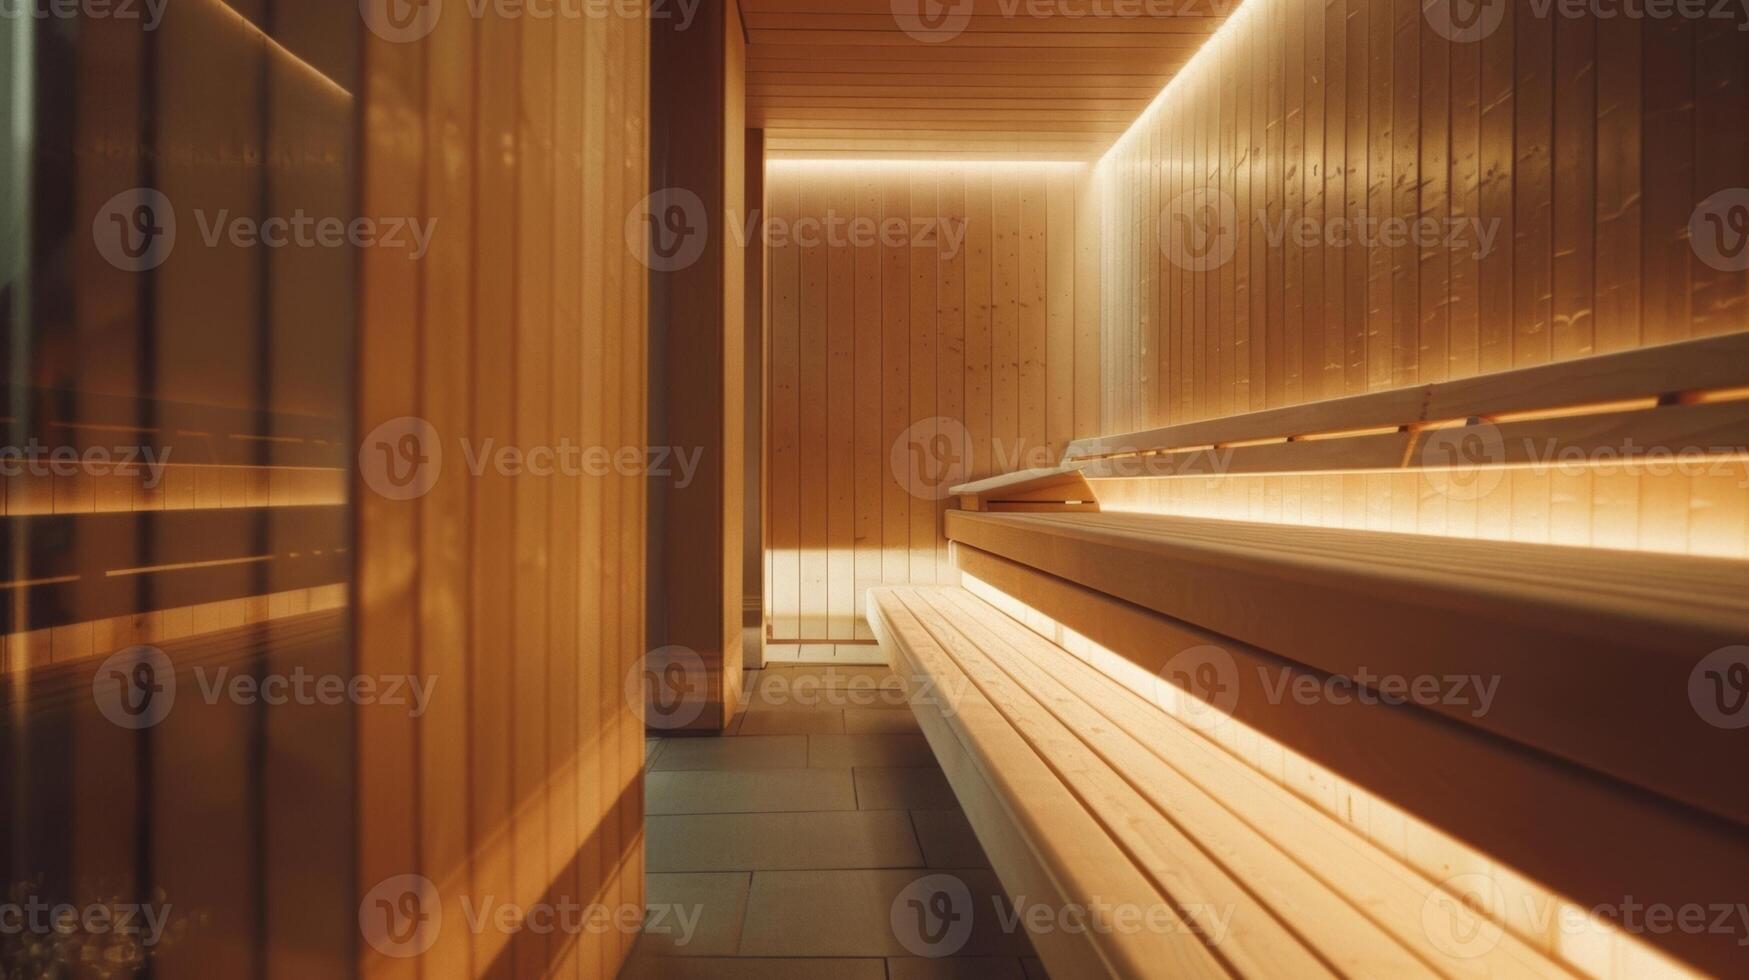 el saunas natural de madera interior y calmante música proporcionar un tranquilo atmósfera para mental claridad y relajación. foto